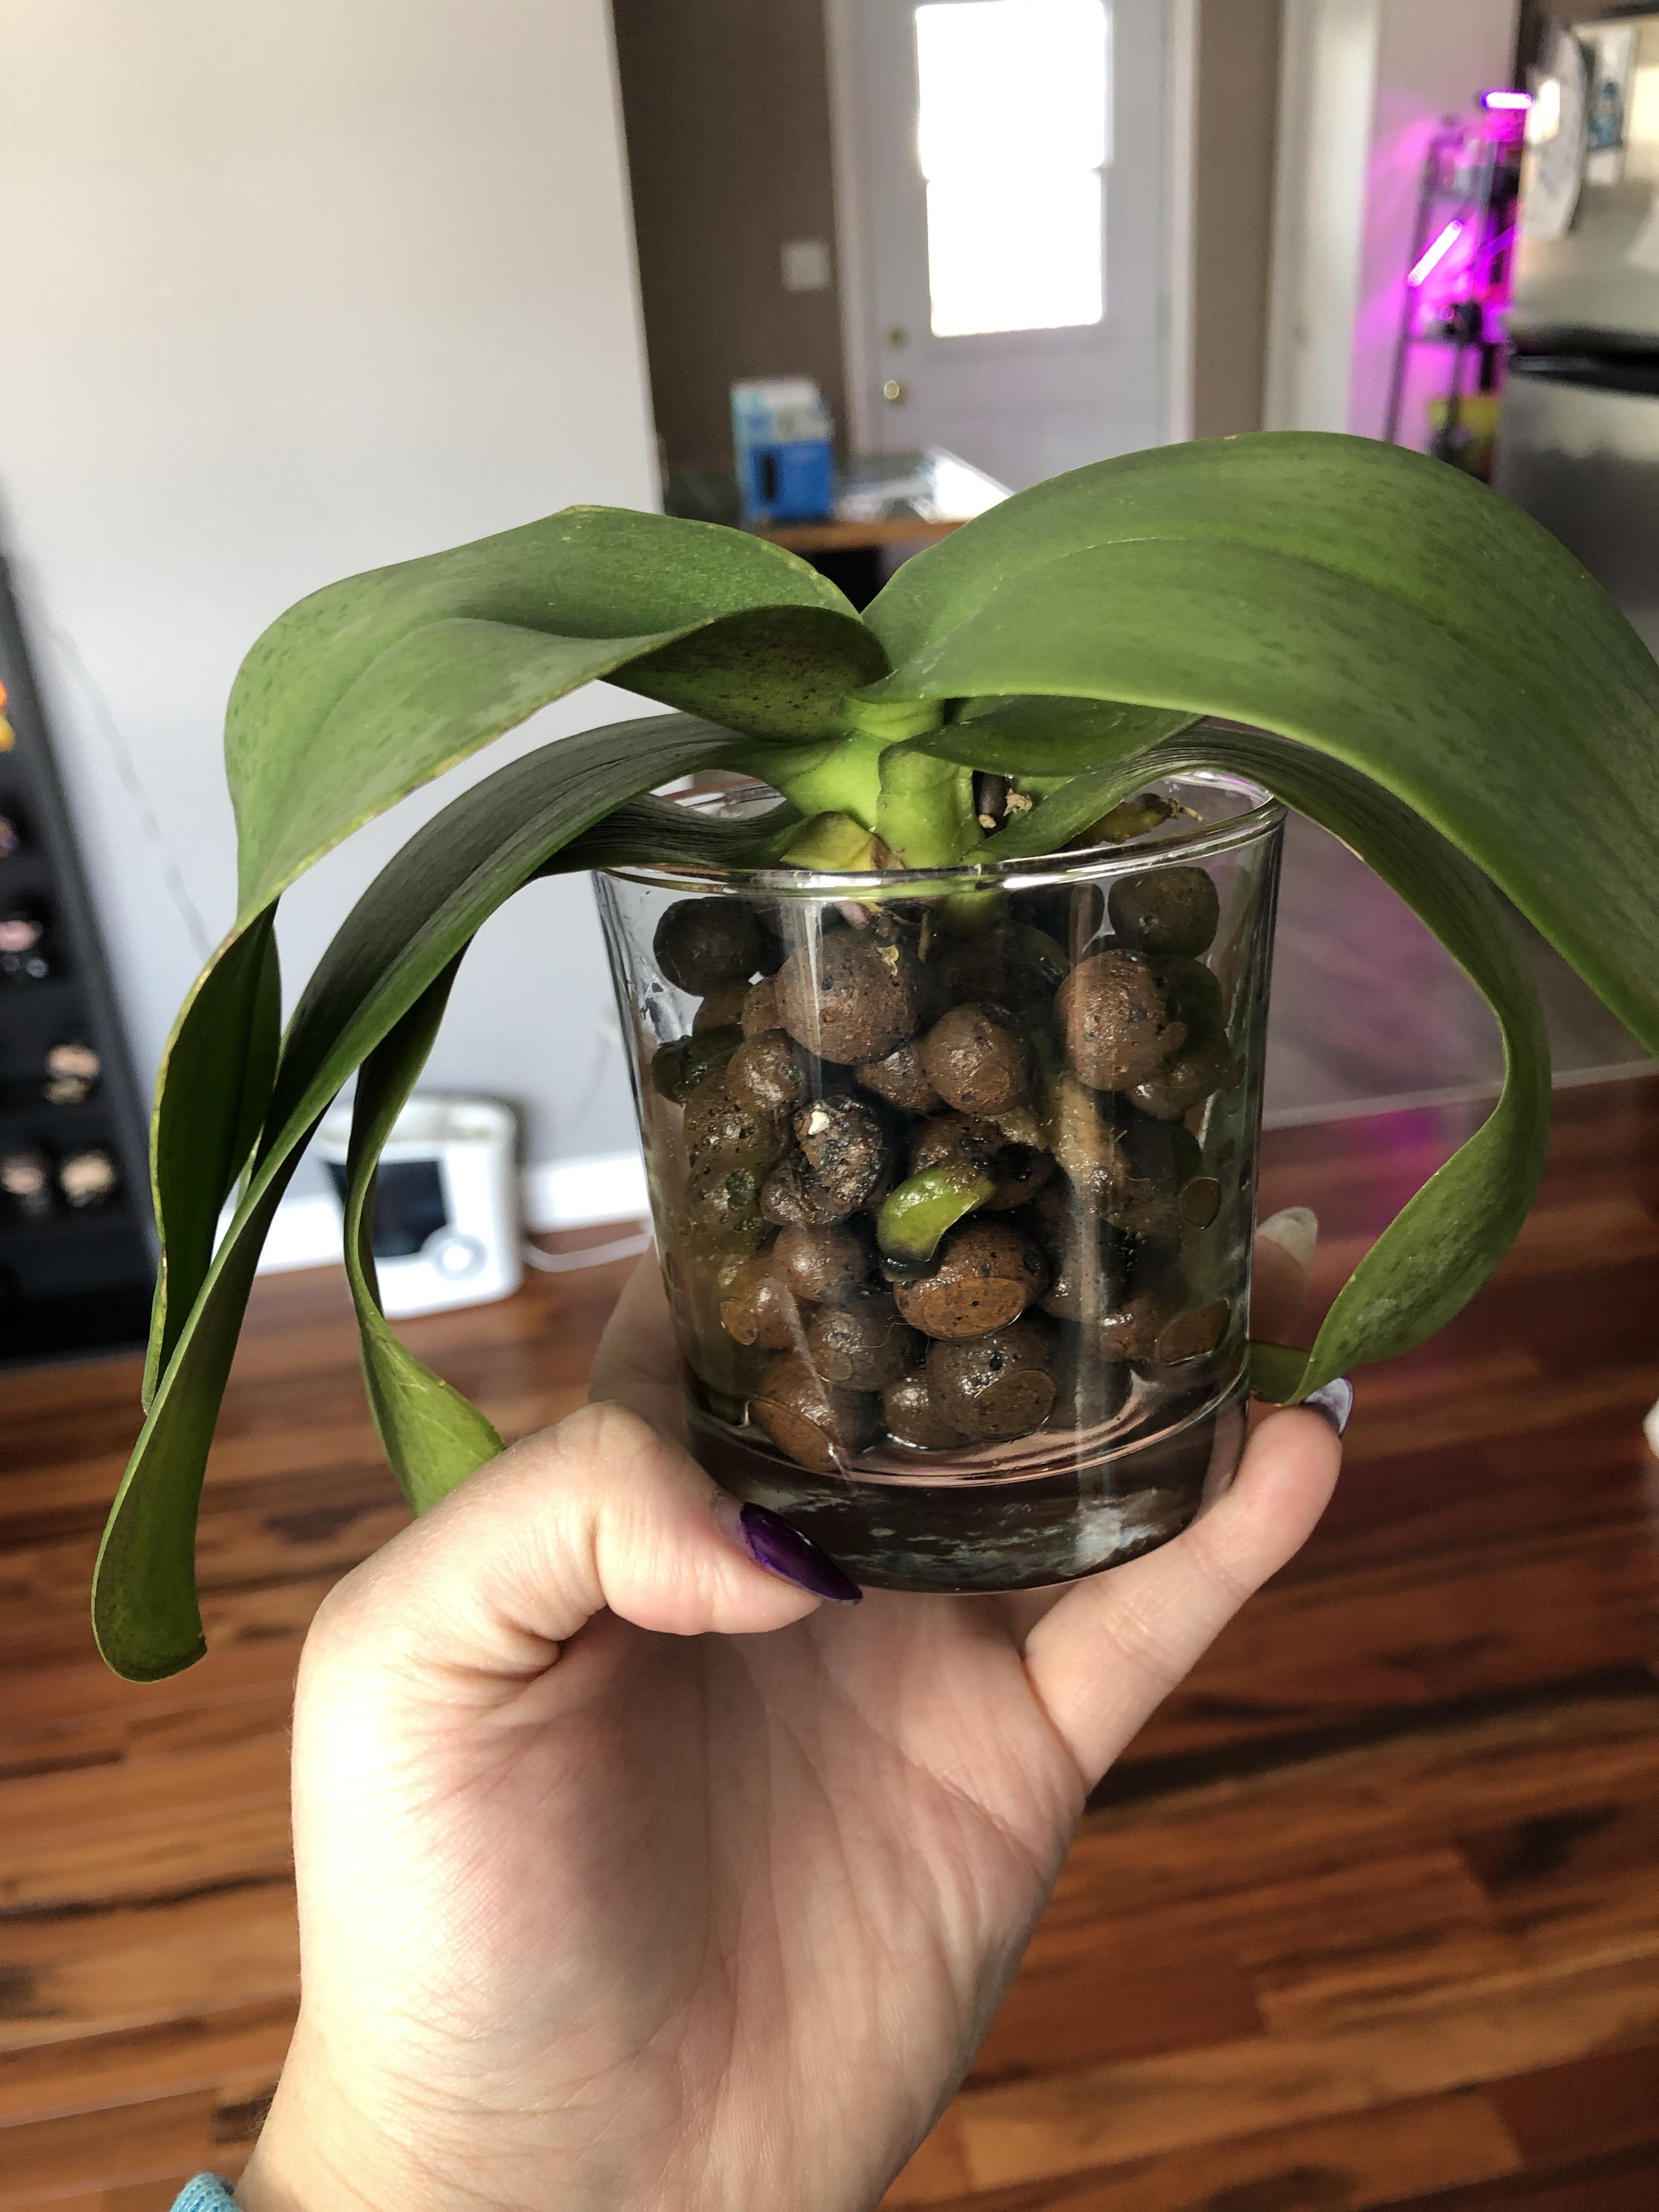 Как спасти орхидею с вялыми листьями: реанимация без корней и наращивание в домашних условиях пошагово. Как вернуть жизнь в мини-тепличке?